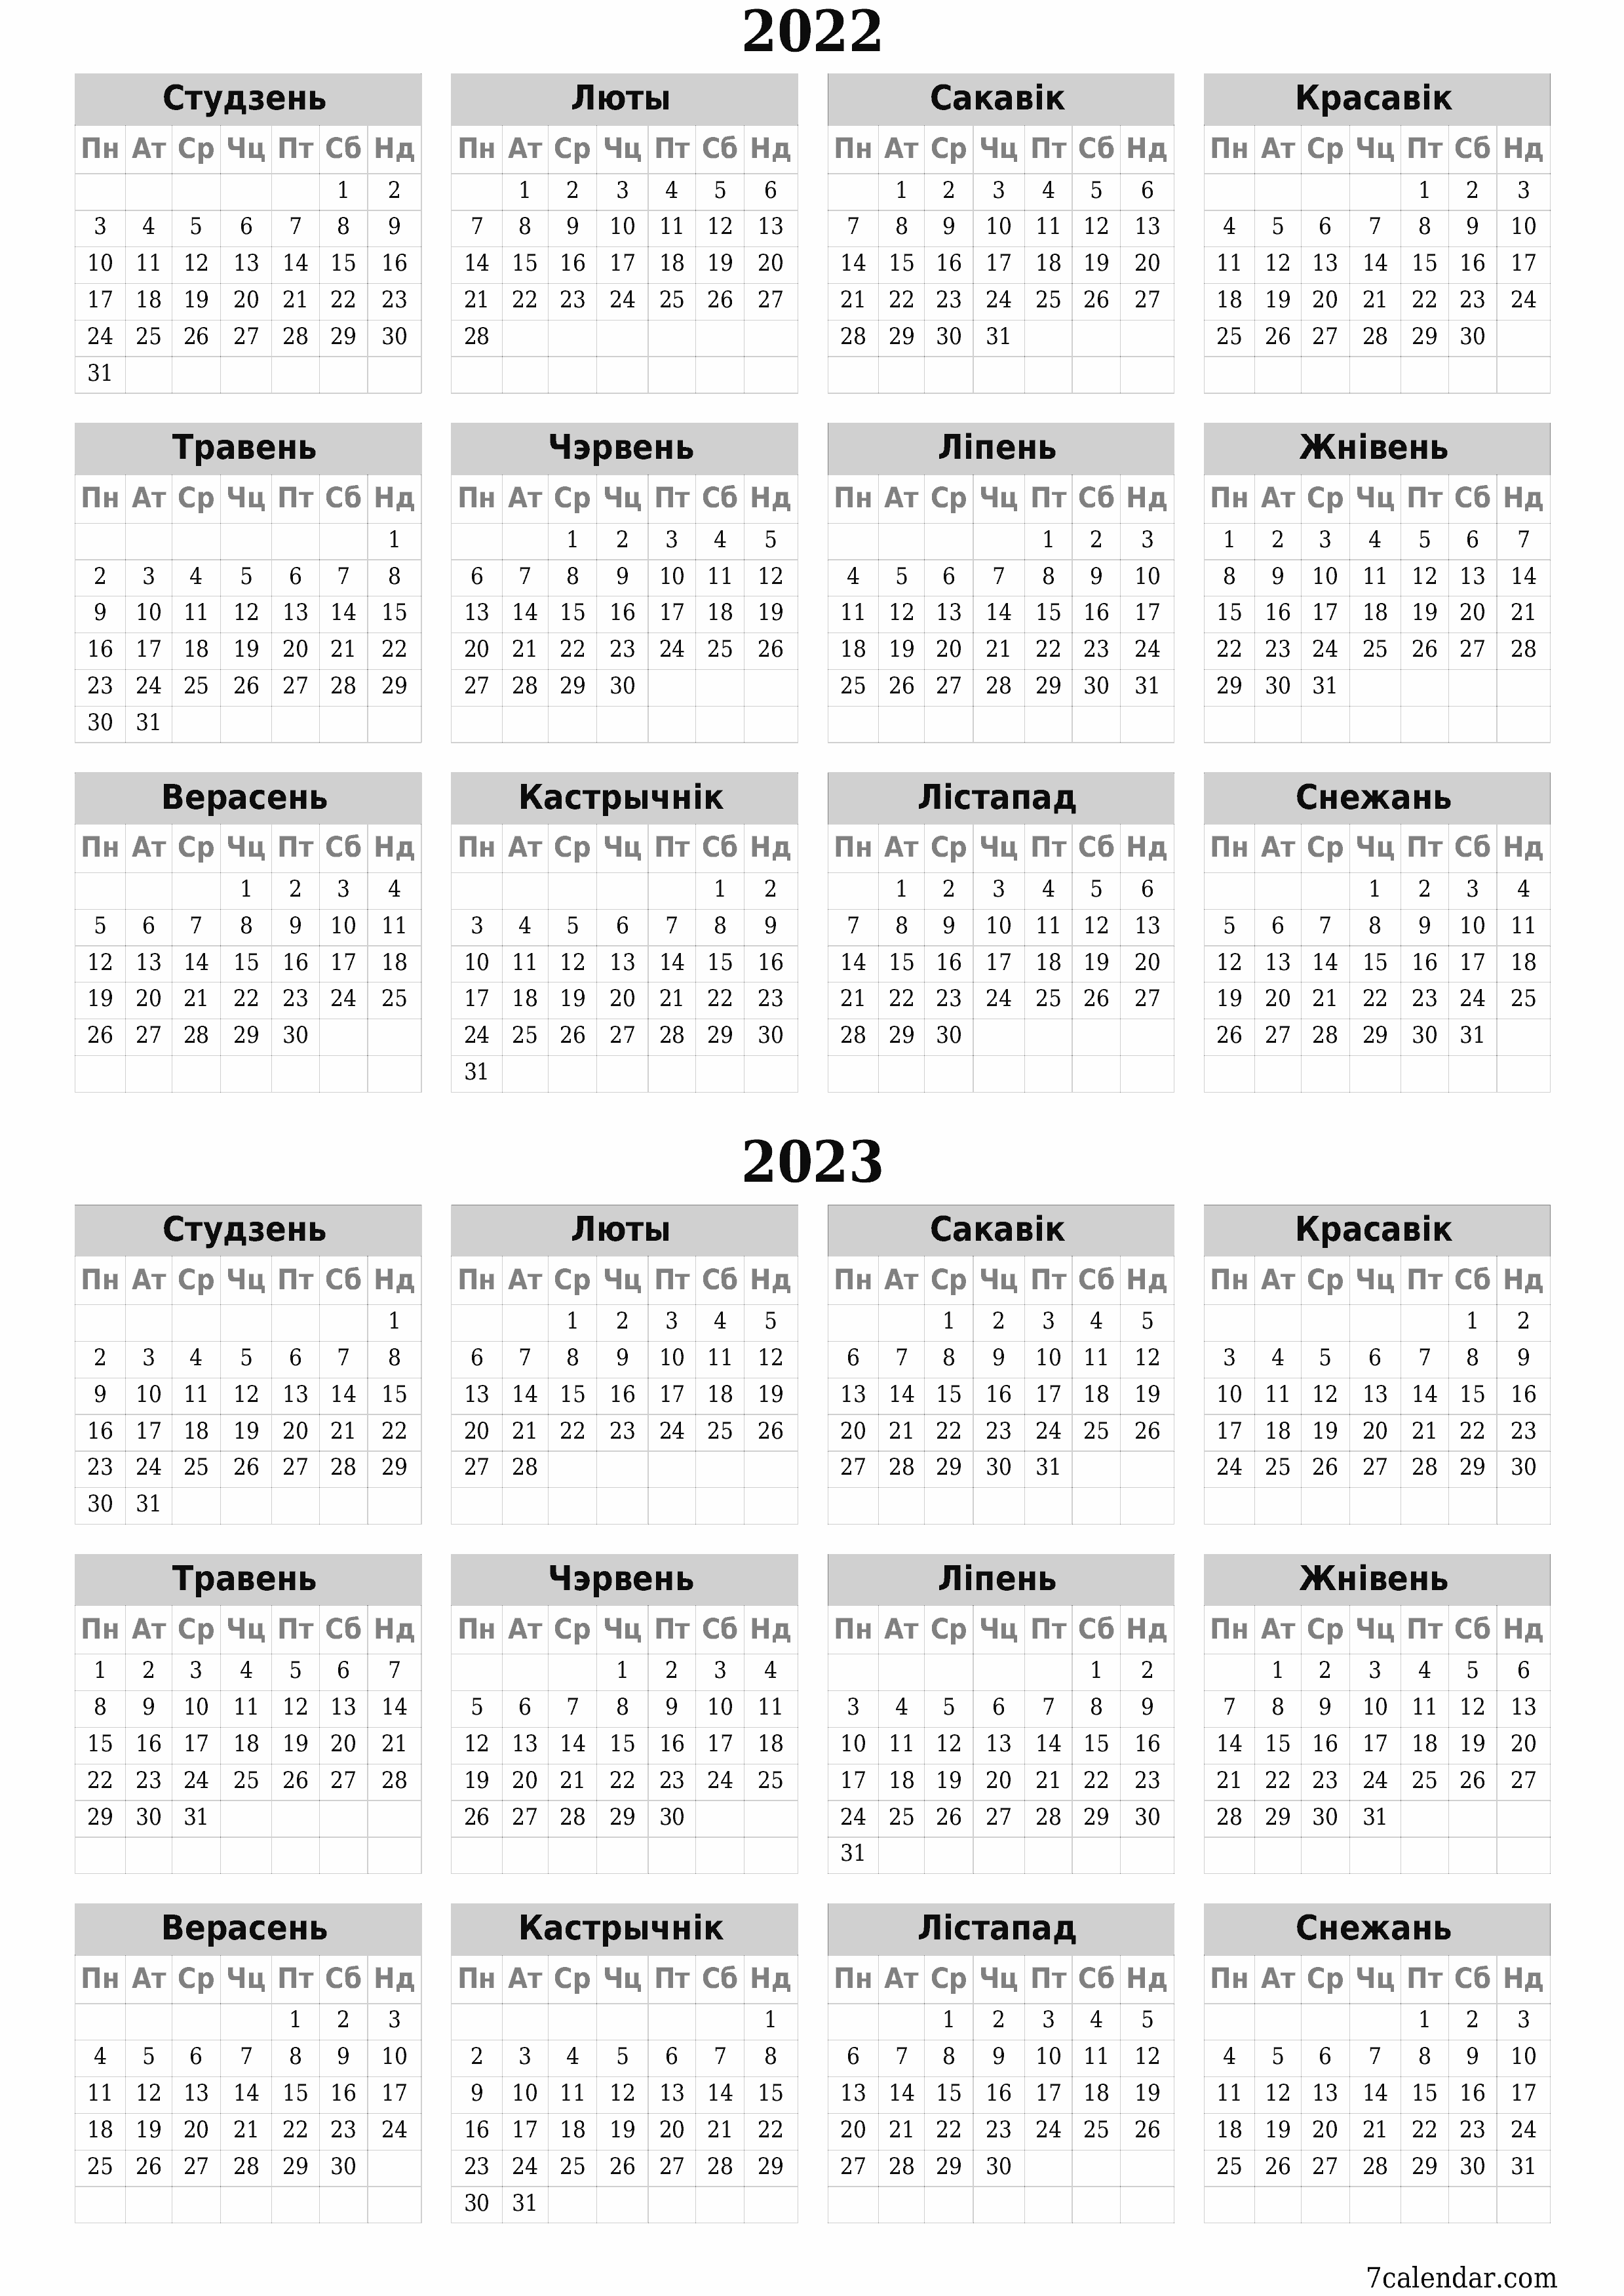  для друку насценны шаблон календара бясплатны вертыкальны Штогадовы каляндар Кастрычнік (Каст) 2022